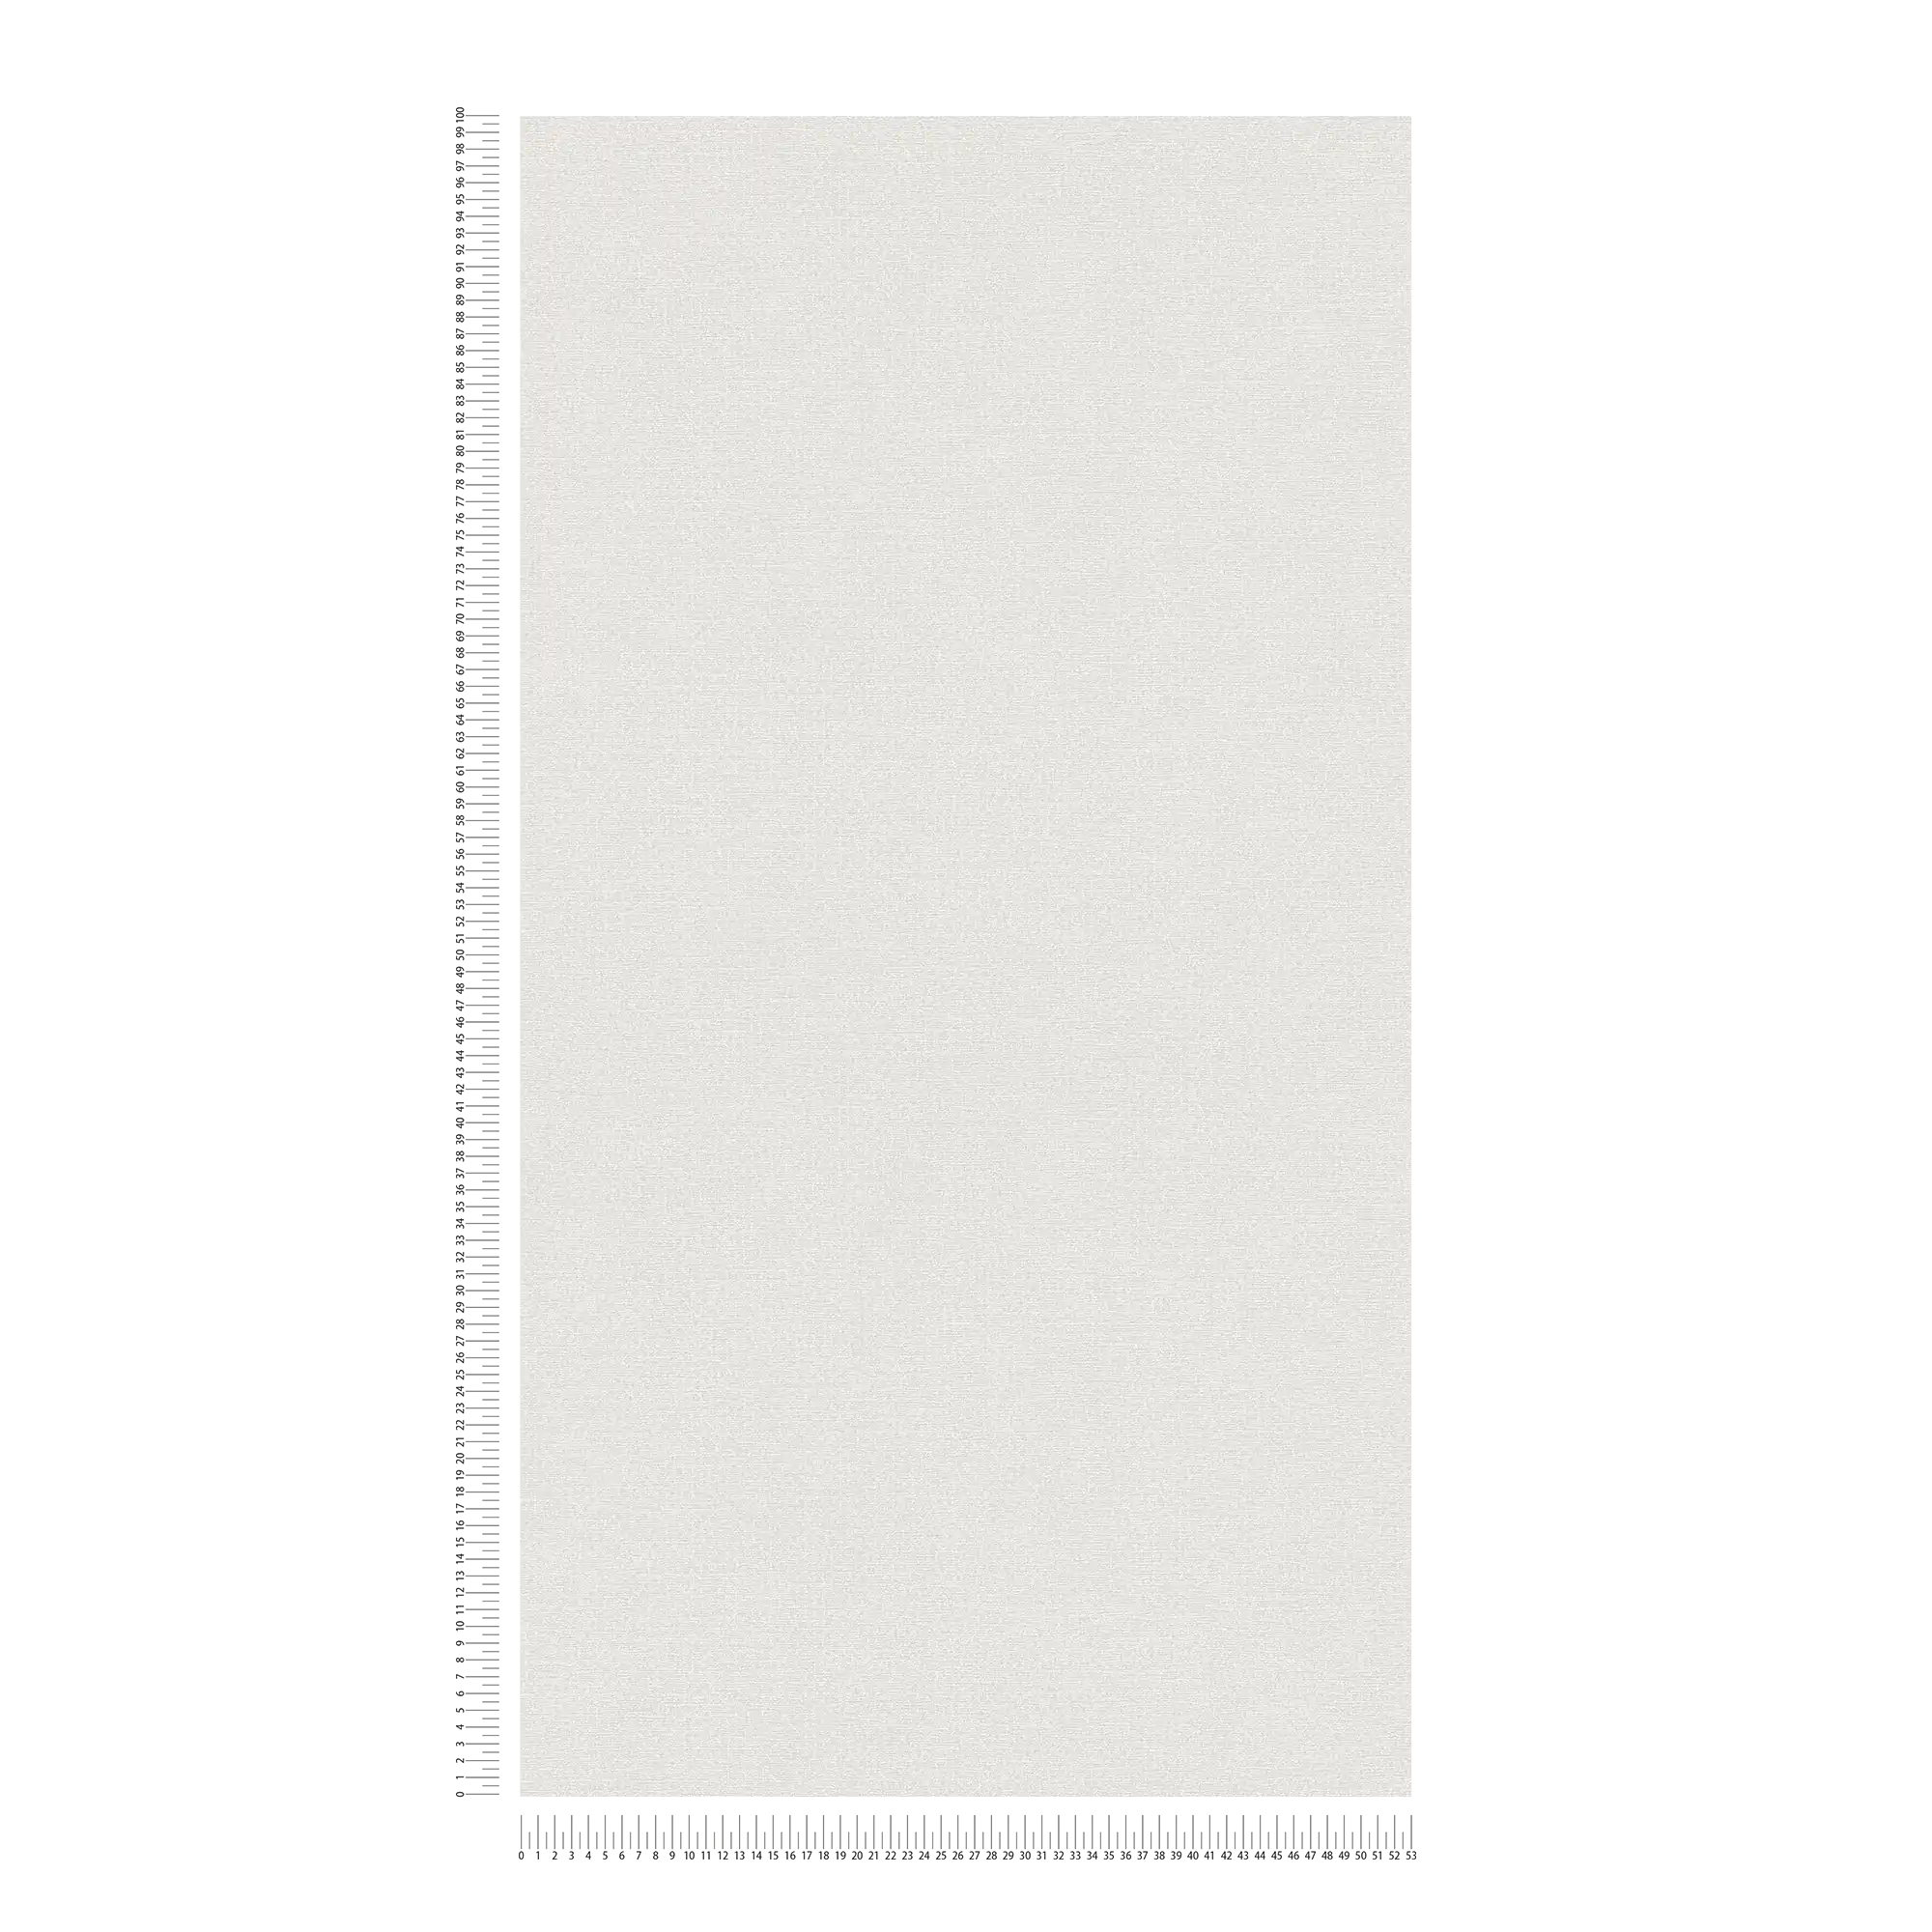             Carta da parati lucida senza PVC con motivo a macchie - grigio, bianco
        